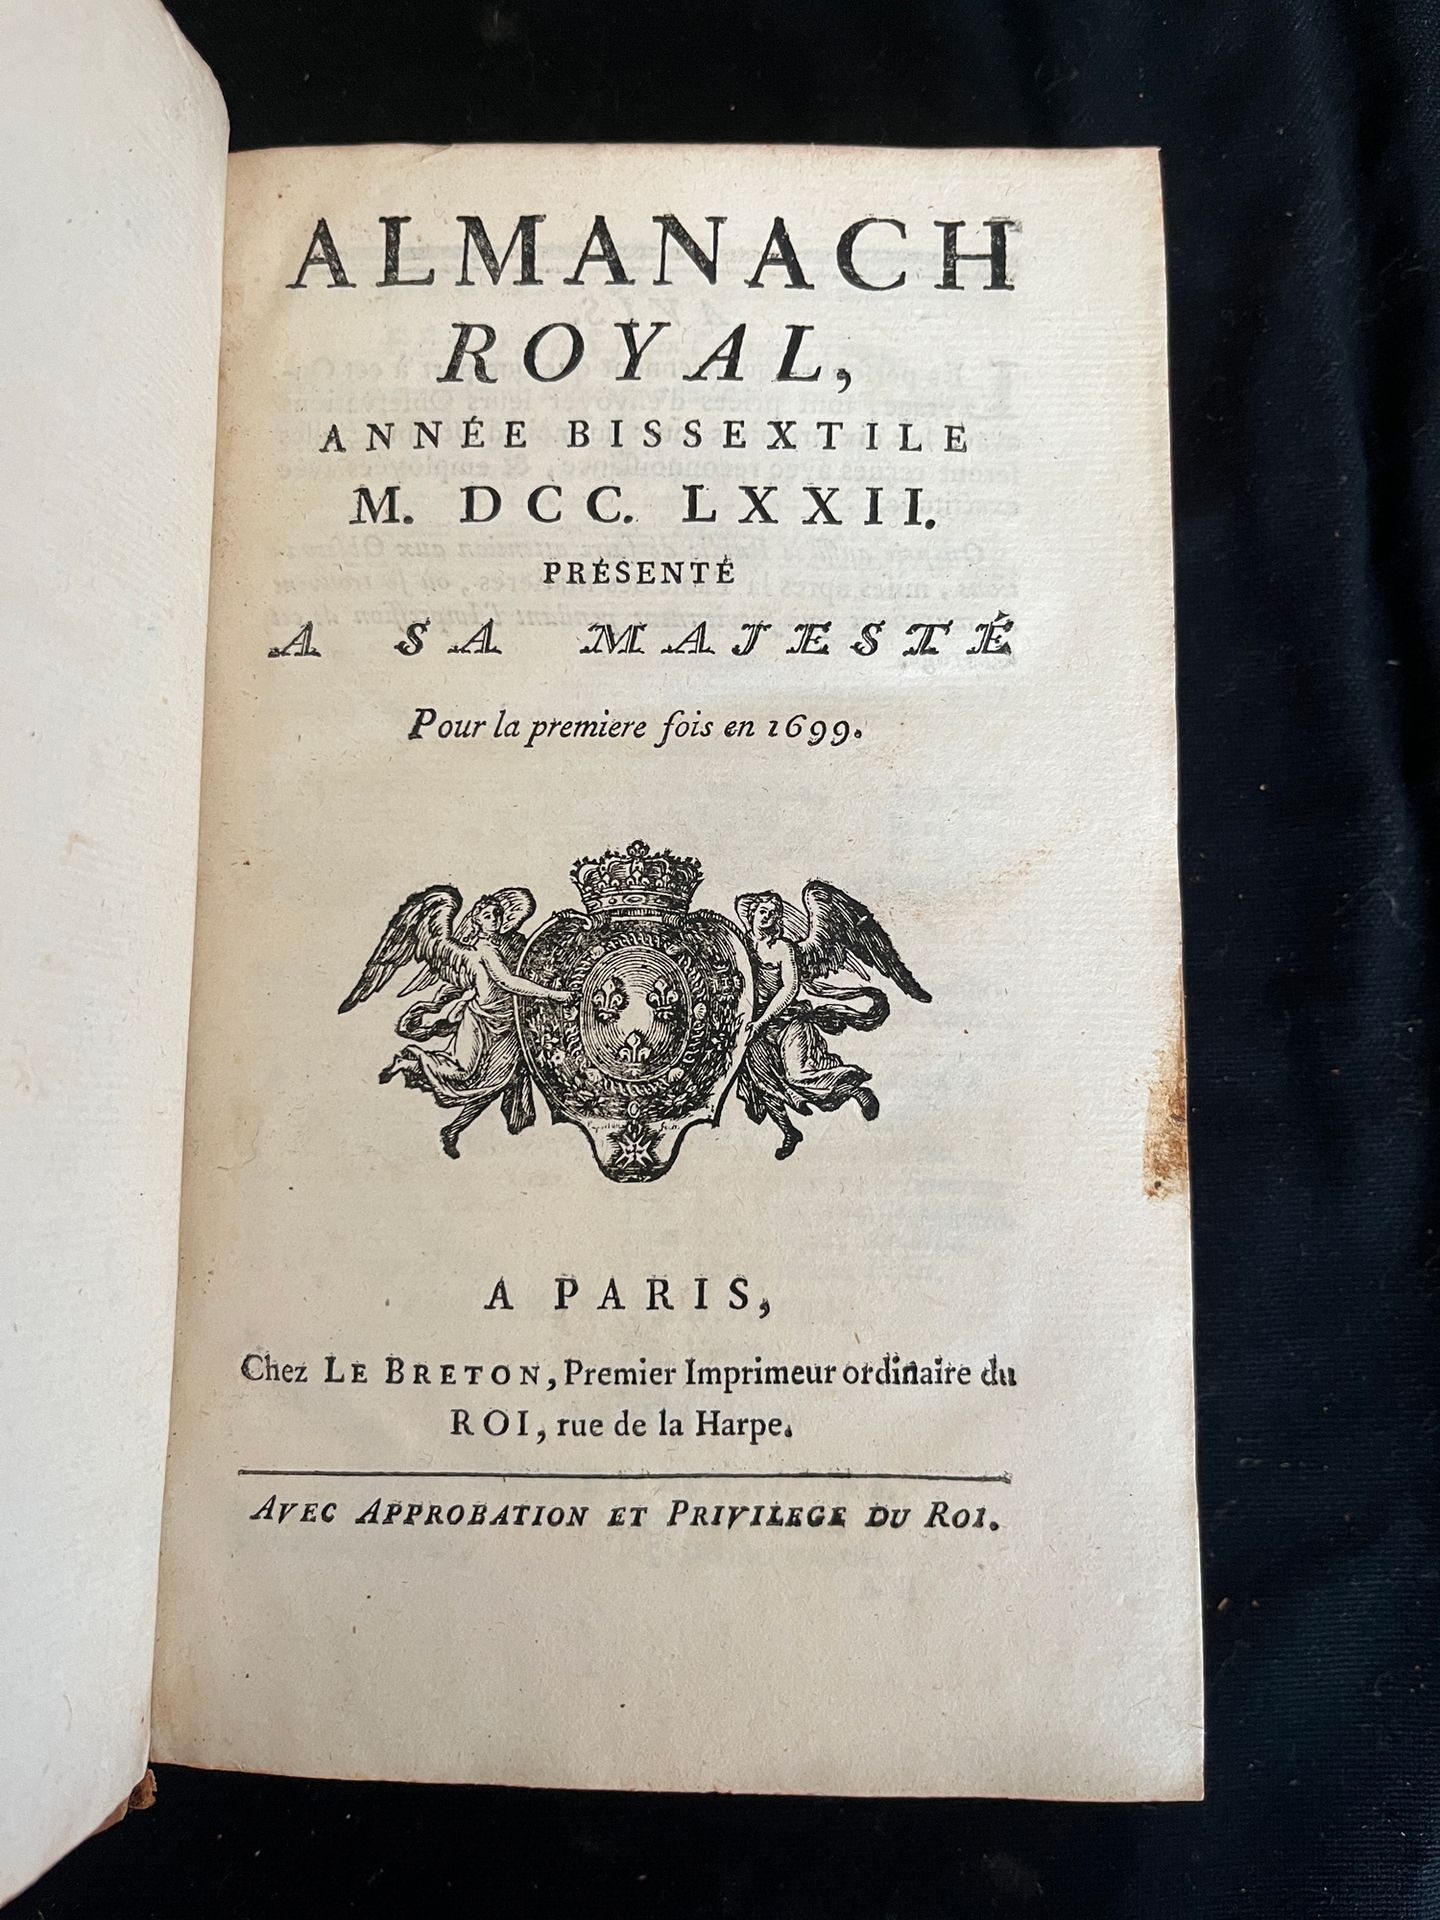 Null [ALMANACH]
Almanach royal pour l'an bissextile MDCCLXXII. Paris, chez Le Br&hellip;